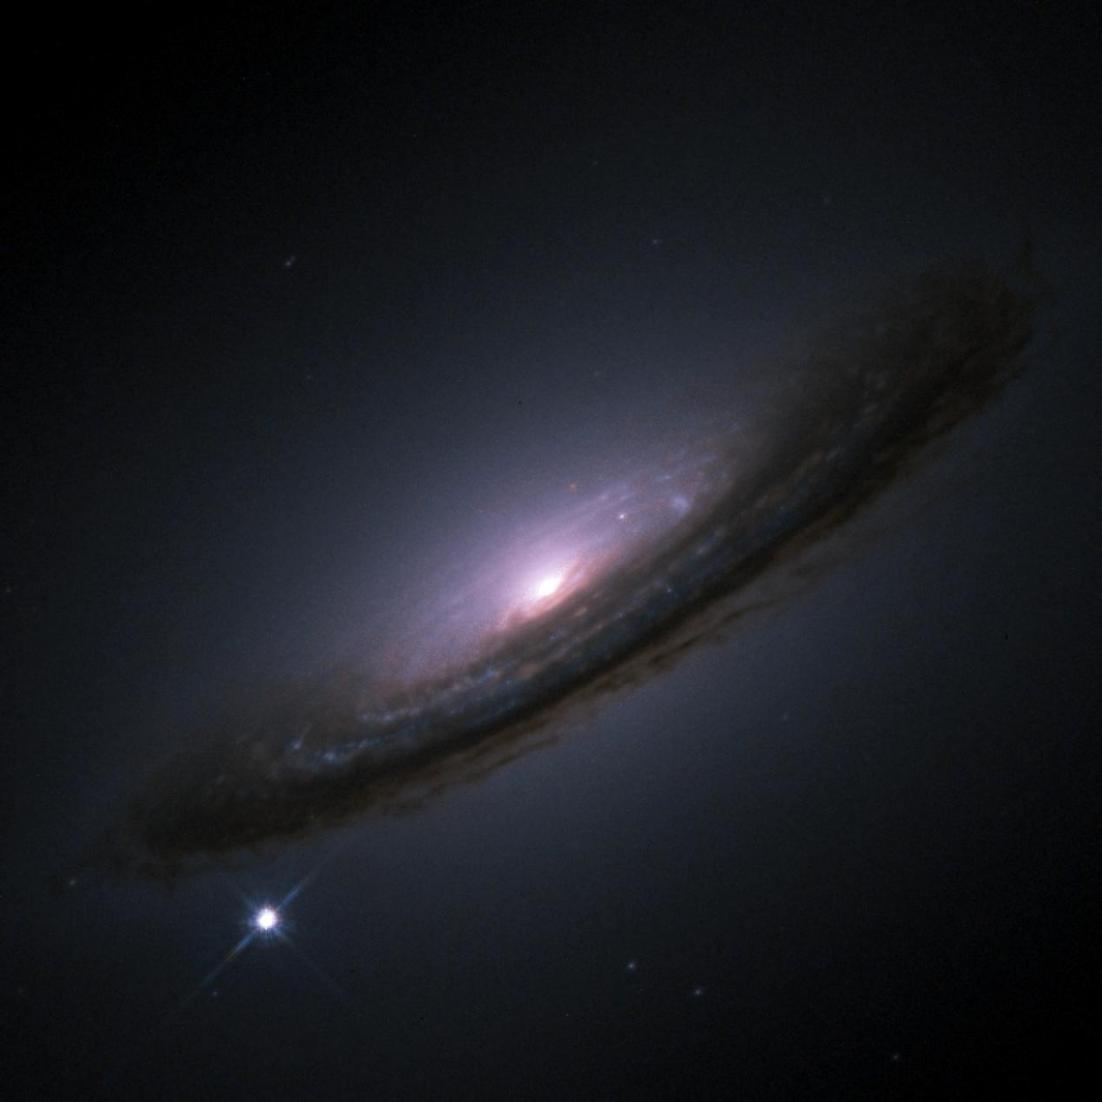 超新星1994D和NGC 4526星系